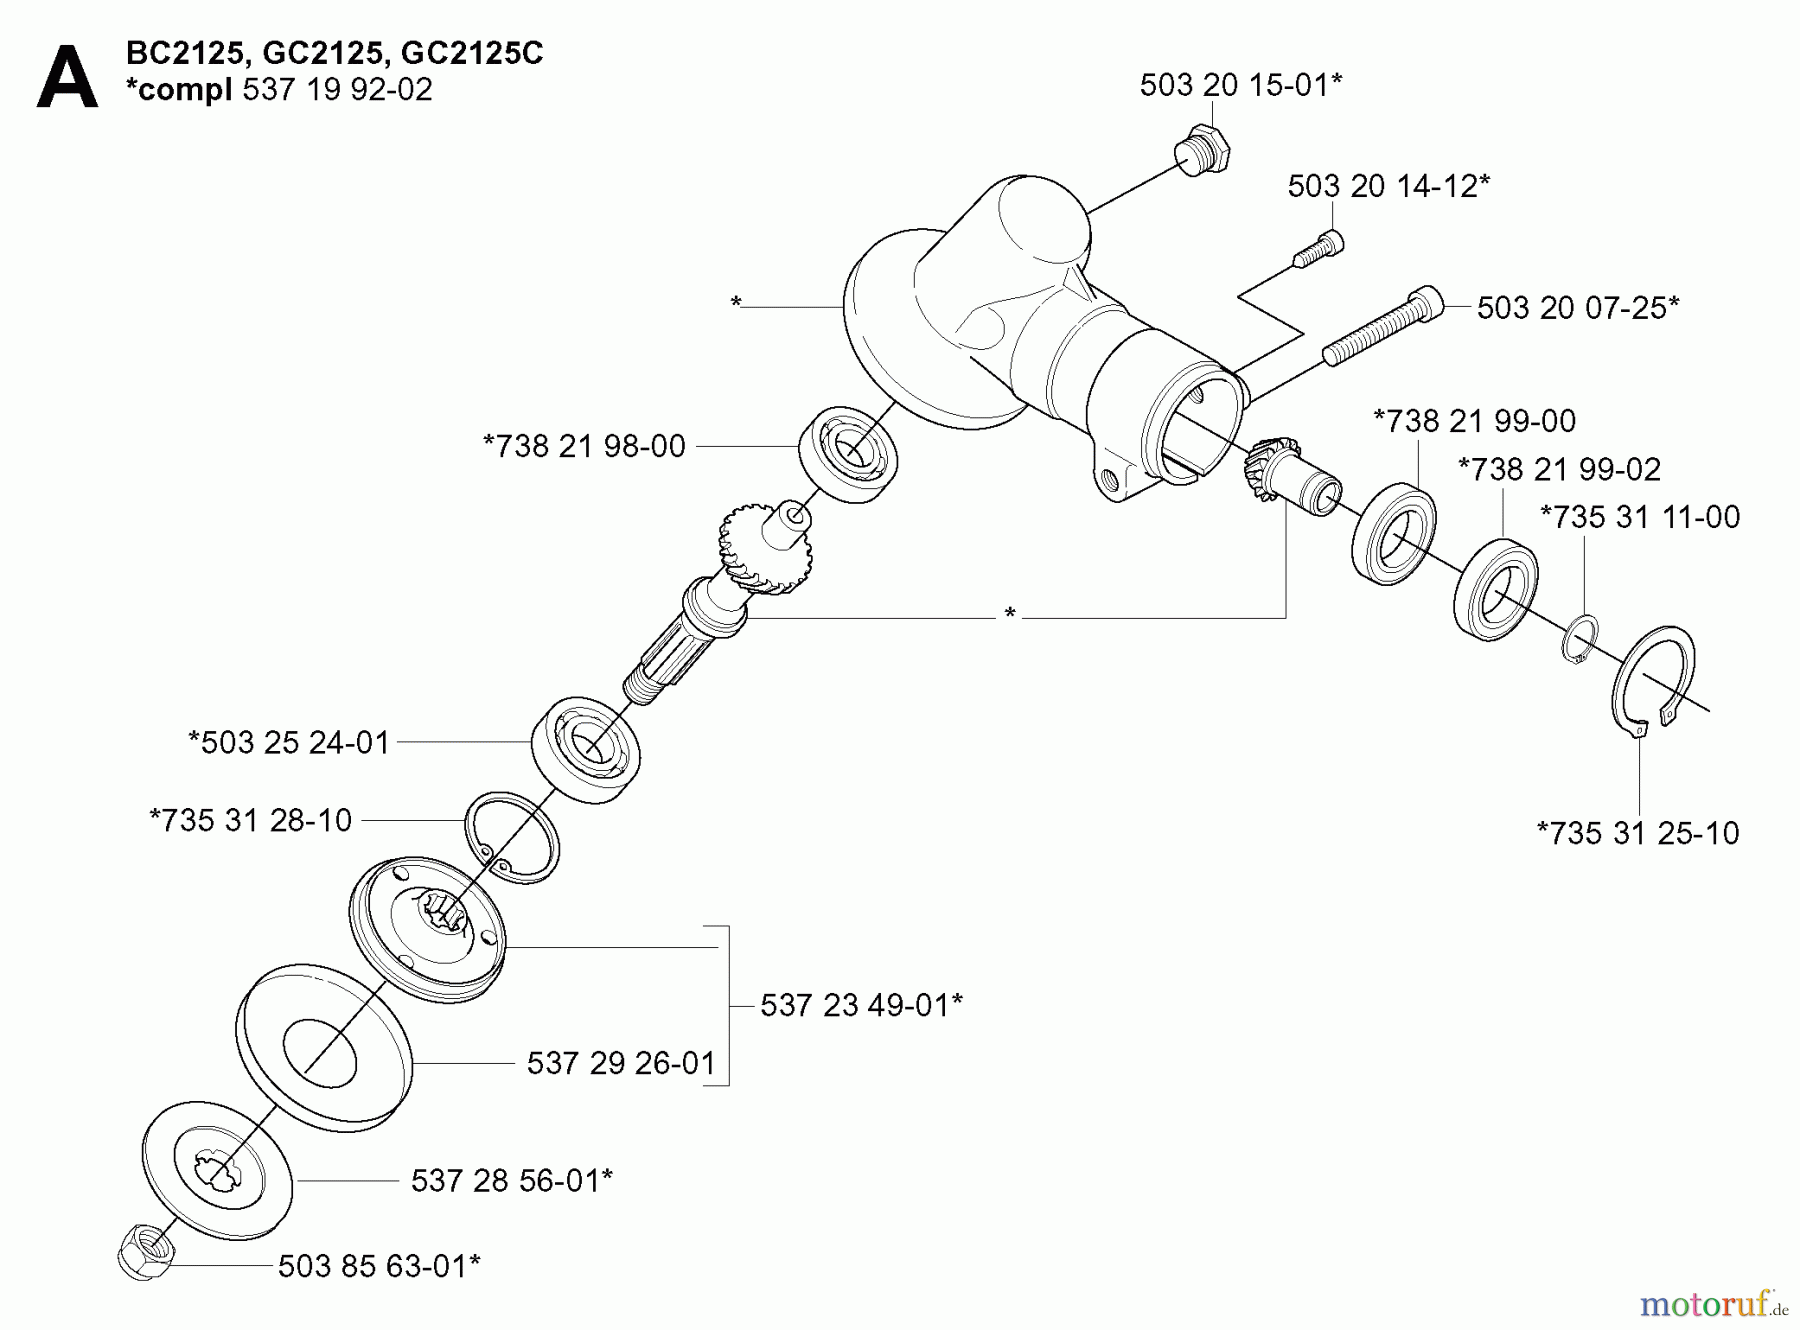  Jonsered Motorsensen, Trimmer GC2125C - Jonsered String/Brush Trimmer (2005-01) BEVEL GEAR